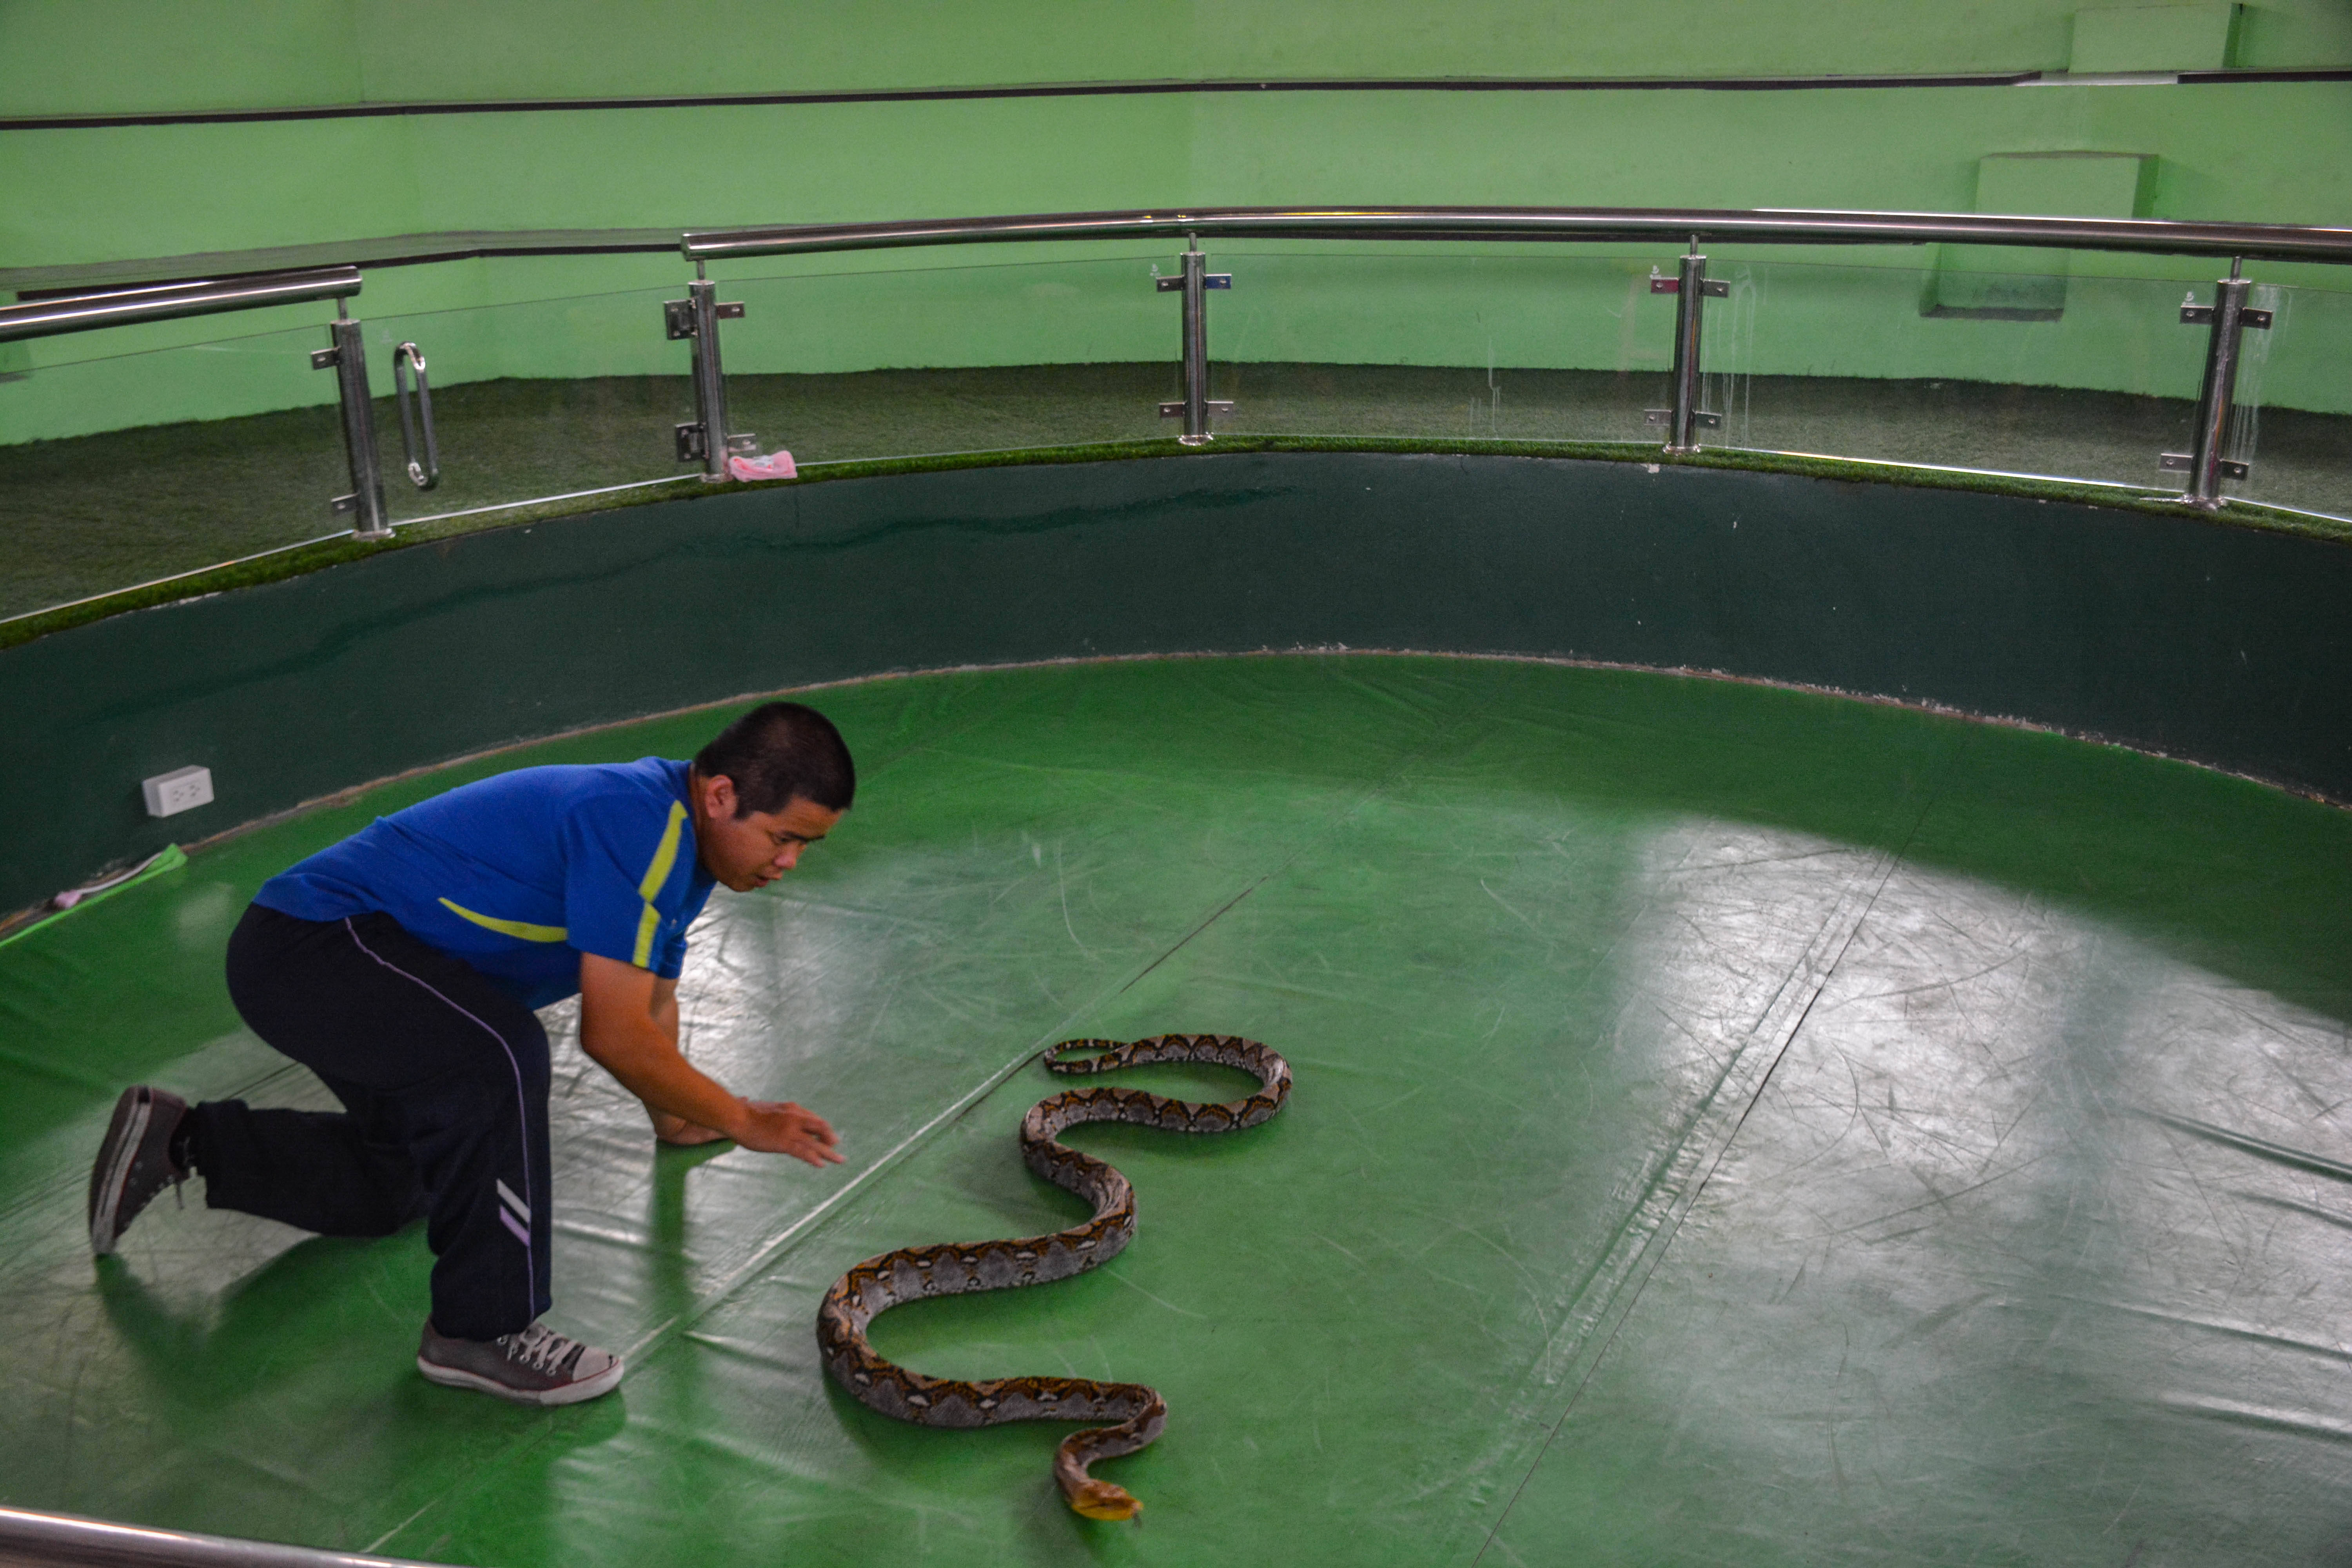 【高清图】泰国皇家毒蛇研究中心戏蛇-中关村在线摄影论坛